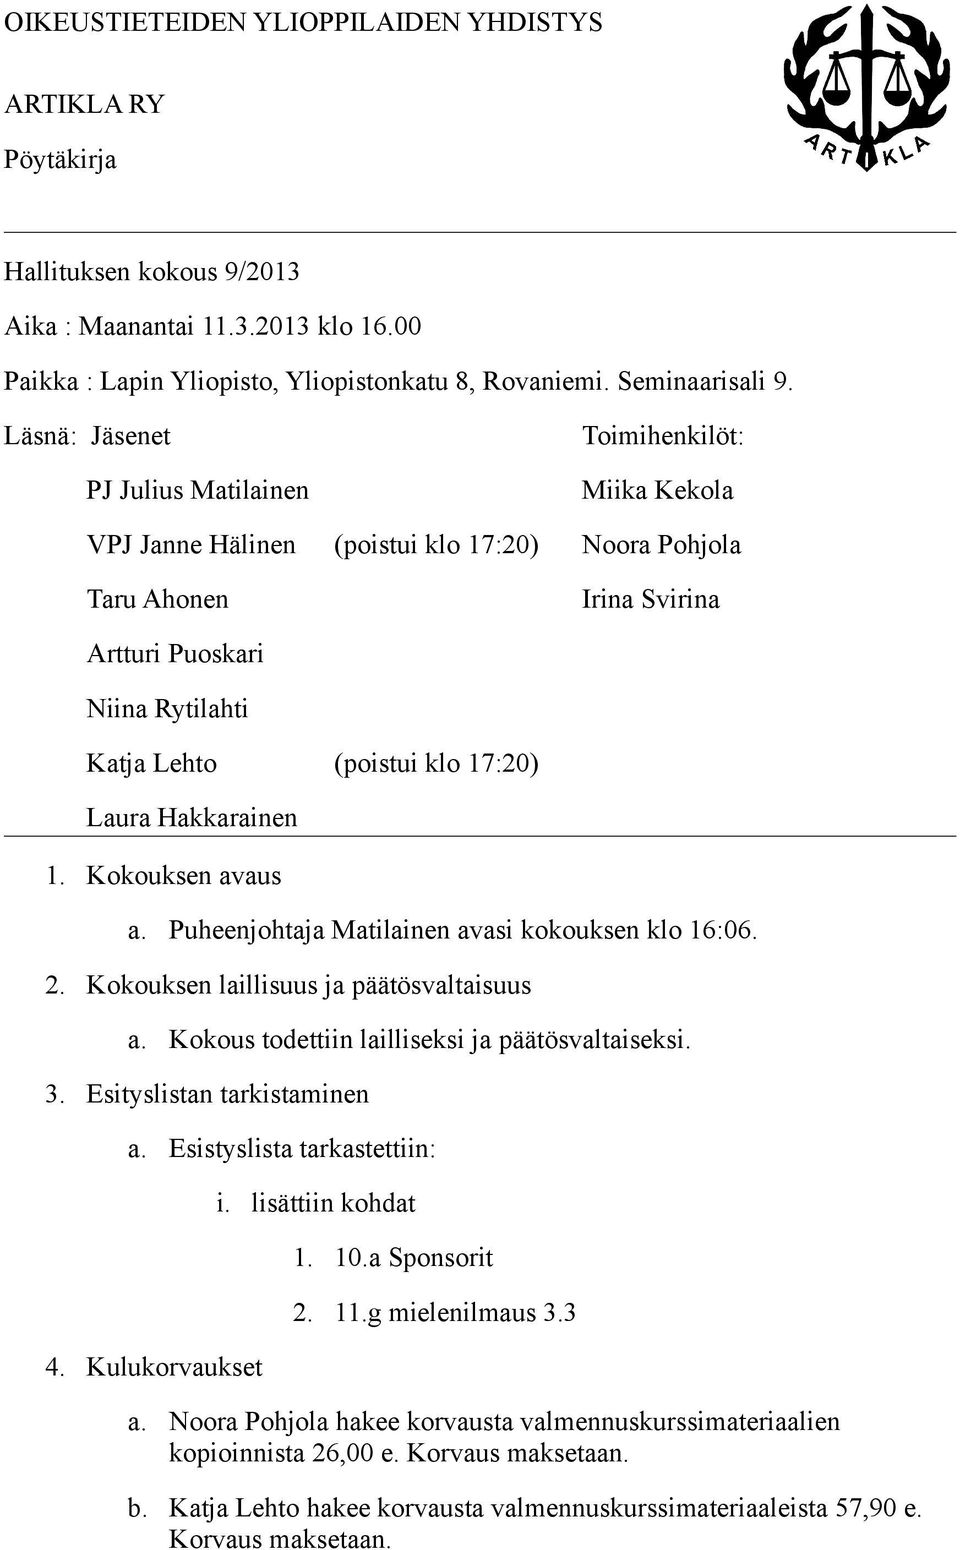 17:20) Laura Hakkarainen 1. Kokouksen avaus a. Puheenjohtaja Matilainen avasi kokouksen klo 16:06. 2. Kokouksen laillisuus ja päätösvaltaisuus a. Kokous todettiin lailliseksi ja päätösvaltaiseksi. 3.